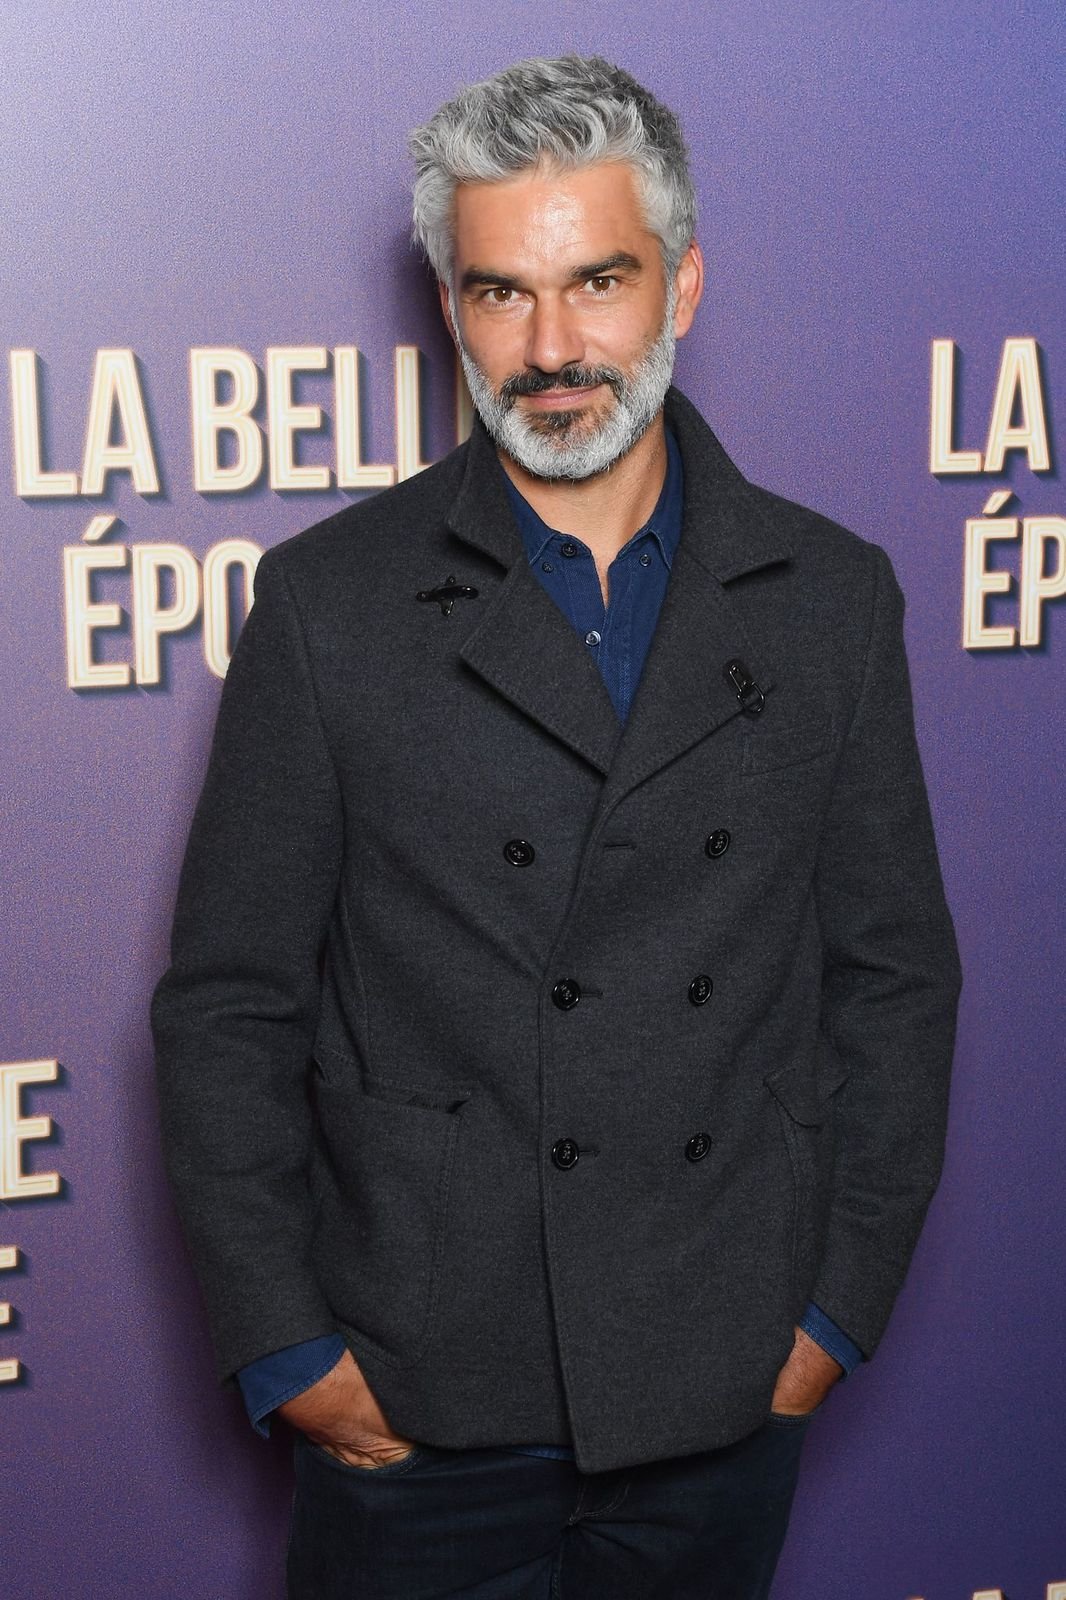 François Vincentelli assiste à la première de "La Belle Epoque" au cinéma Gaumont Opéra Capucines le 17 octobre 2019 à Paris, France. | Photo : Getty Images